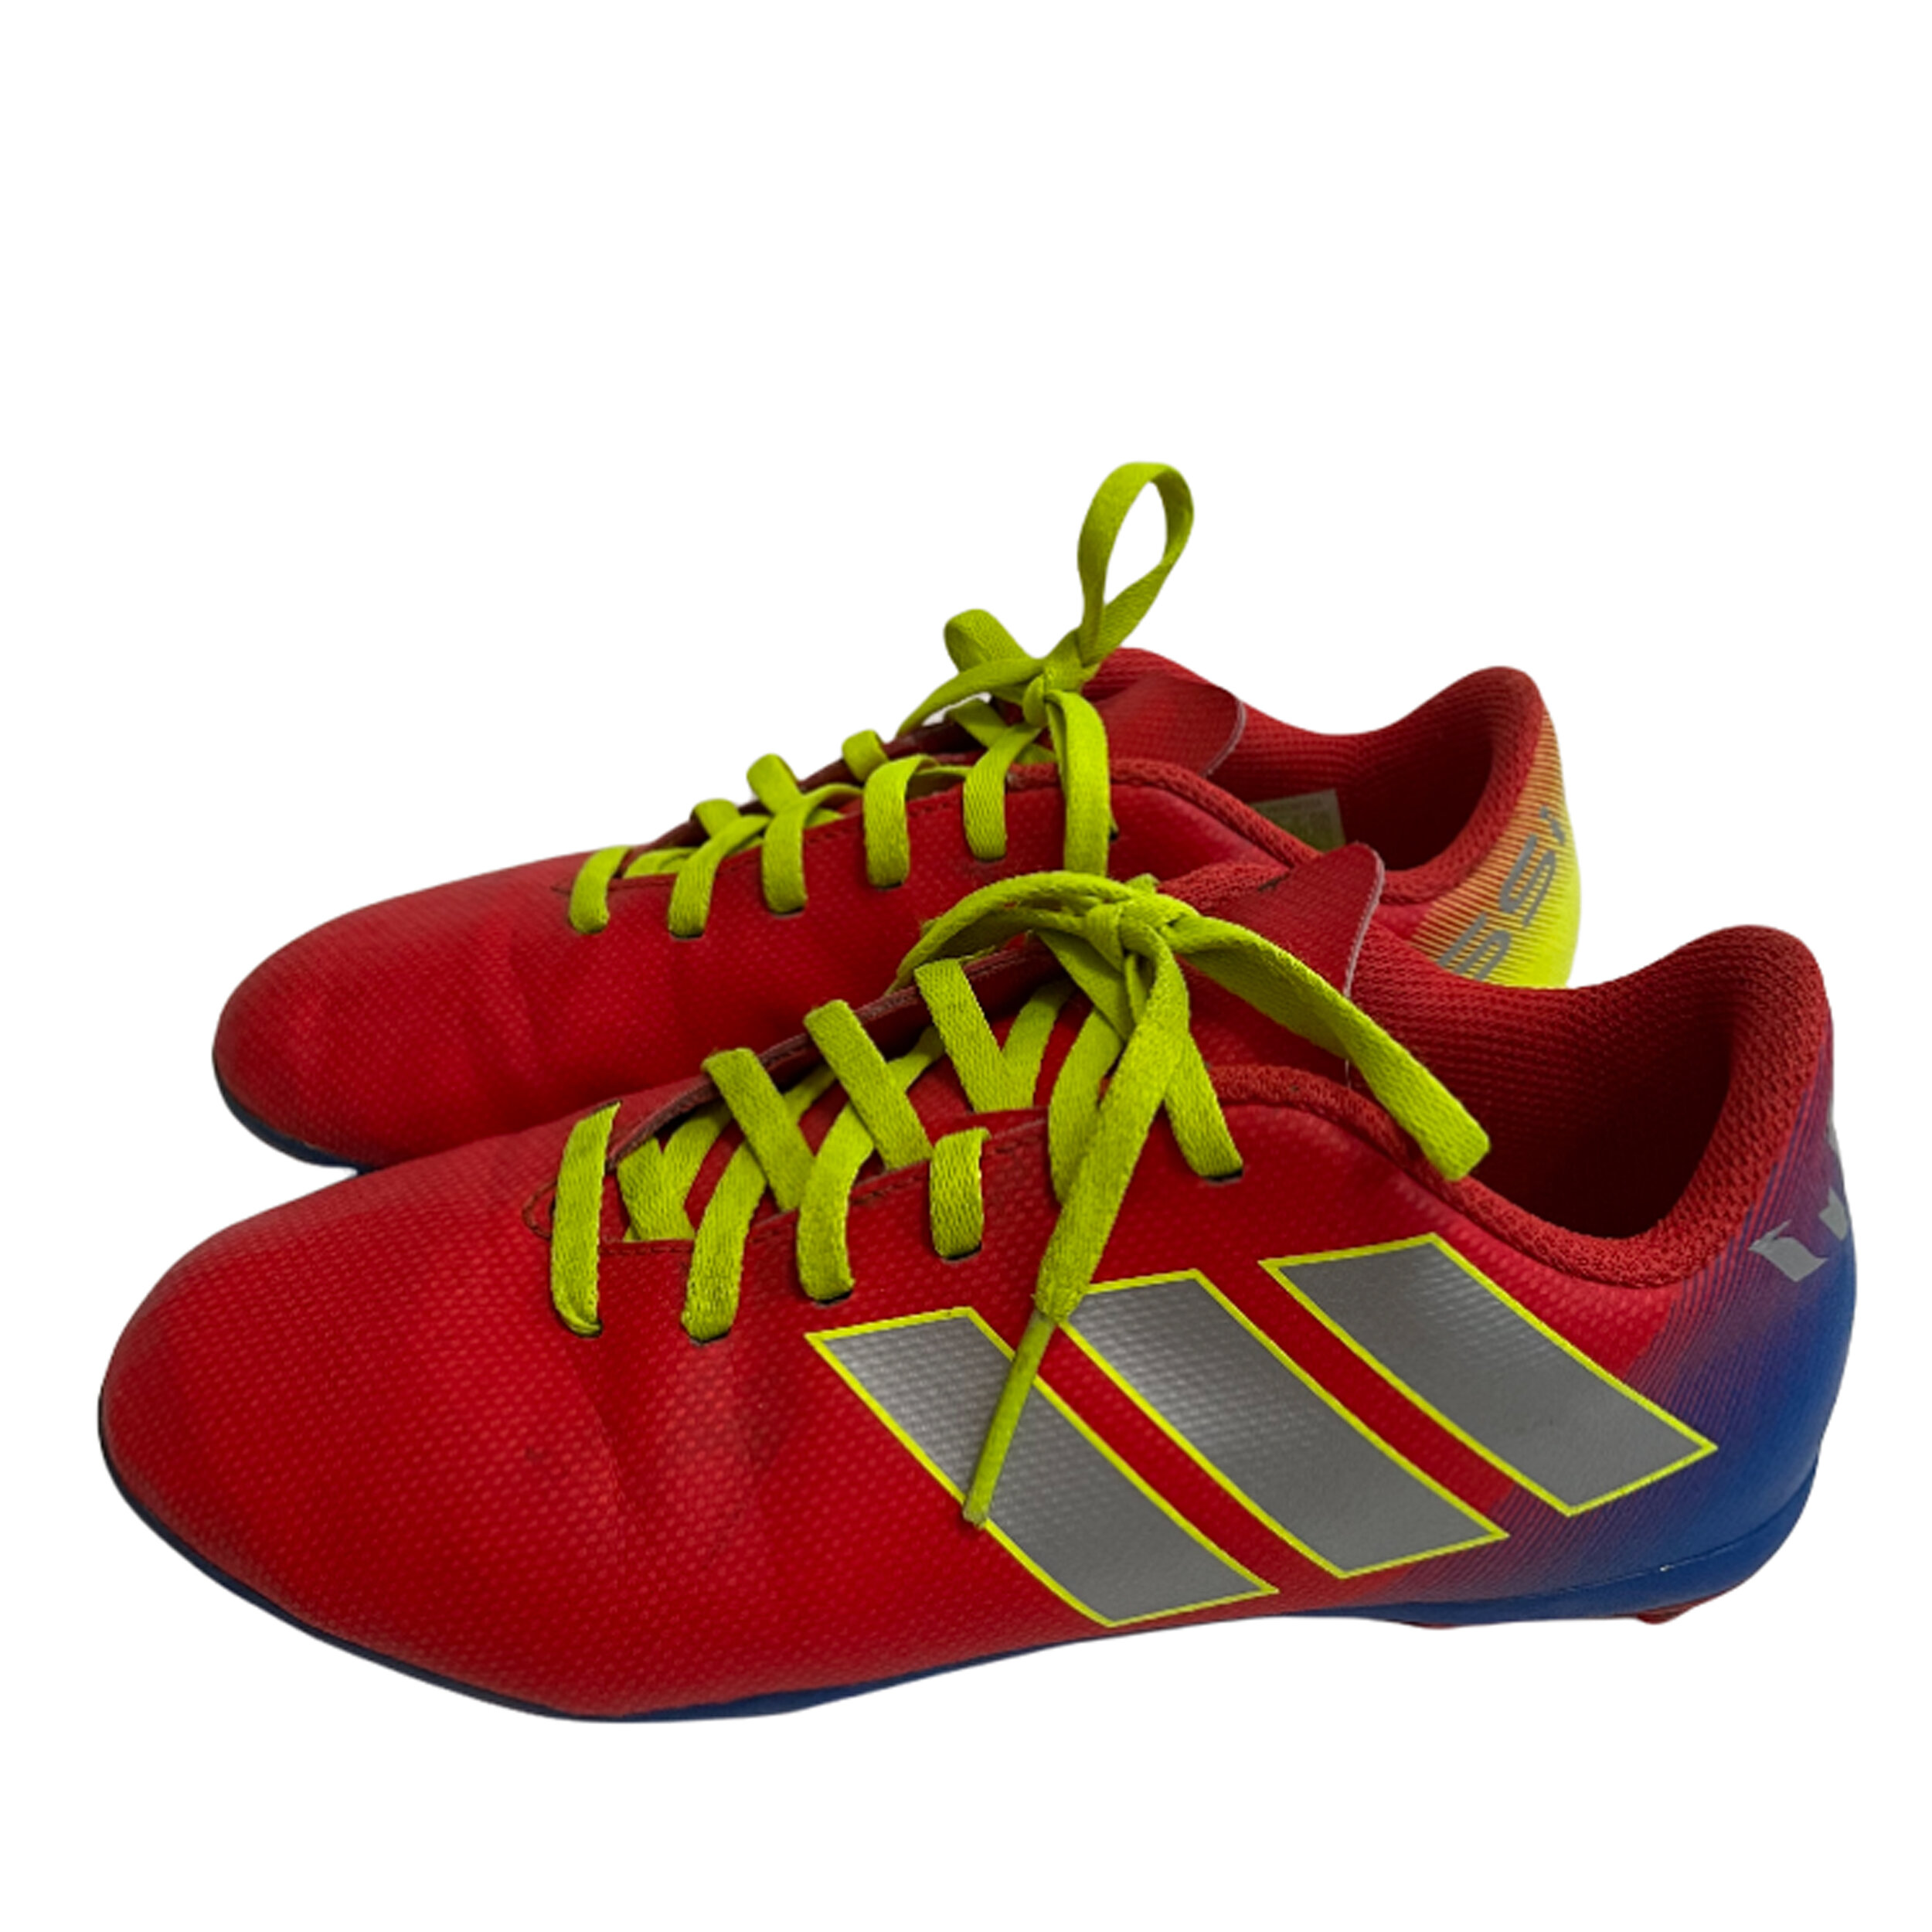 circulación Coincidencia corte largo Adidas Nemeziz Messi Soccer Cleats l Size 3.5